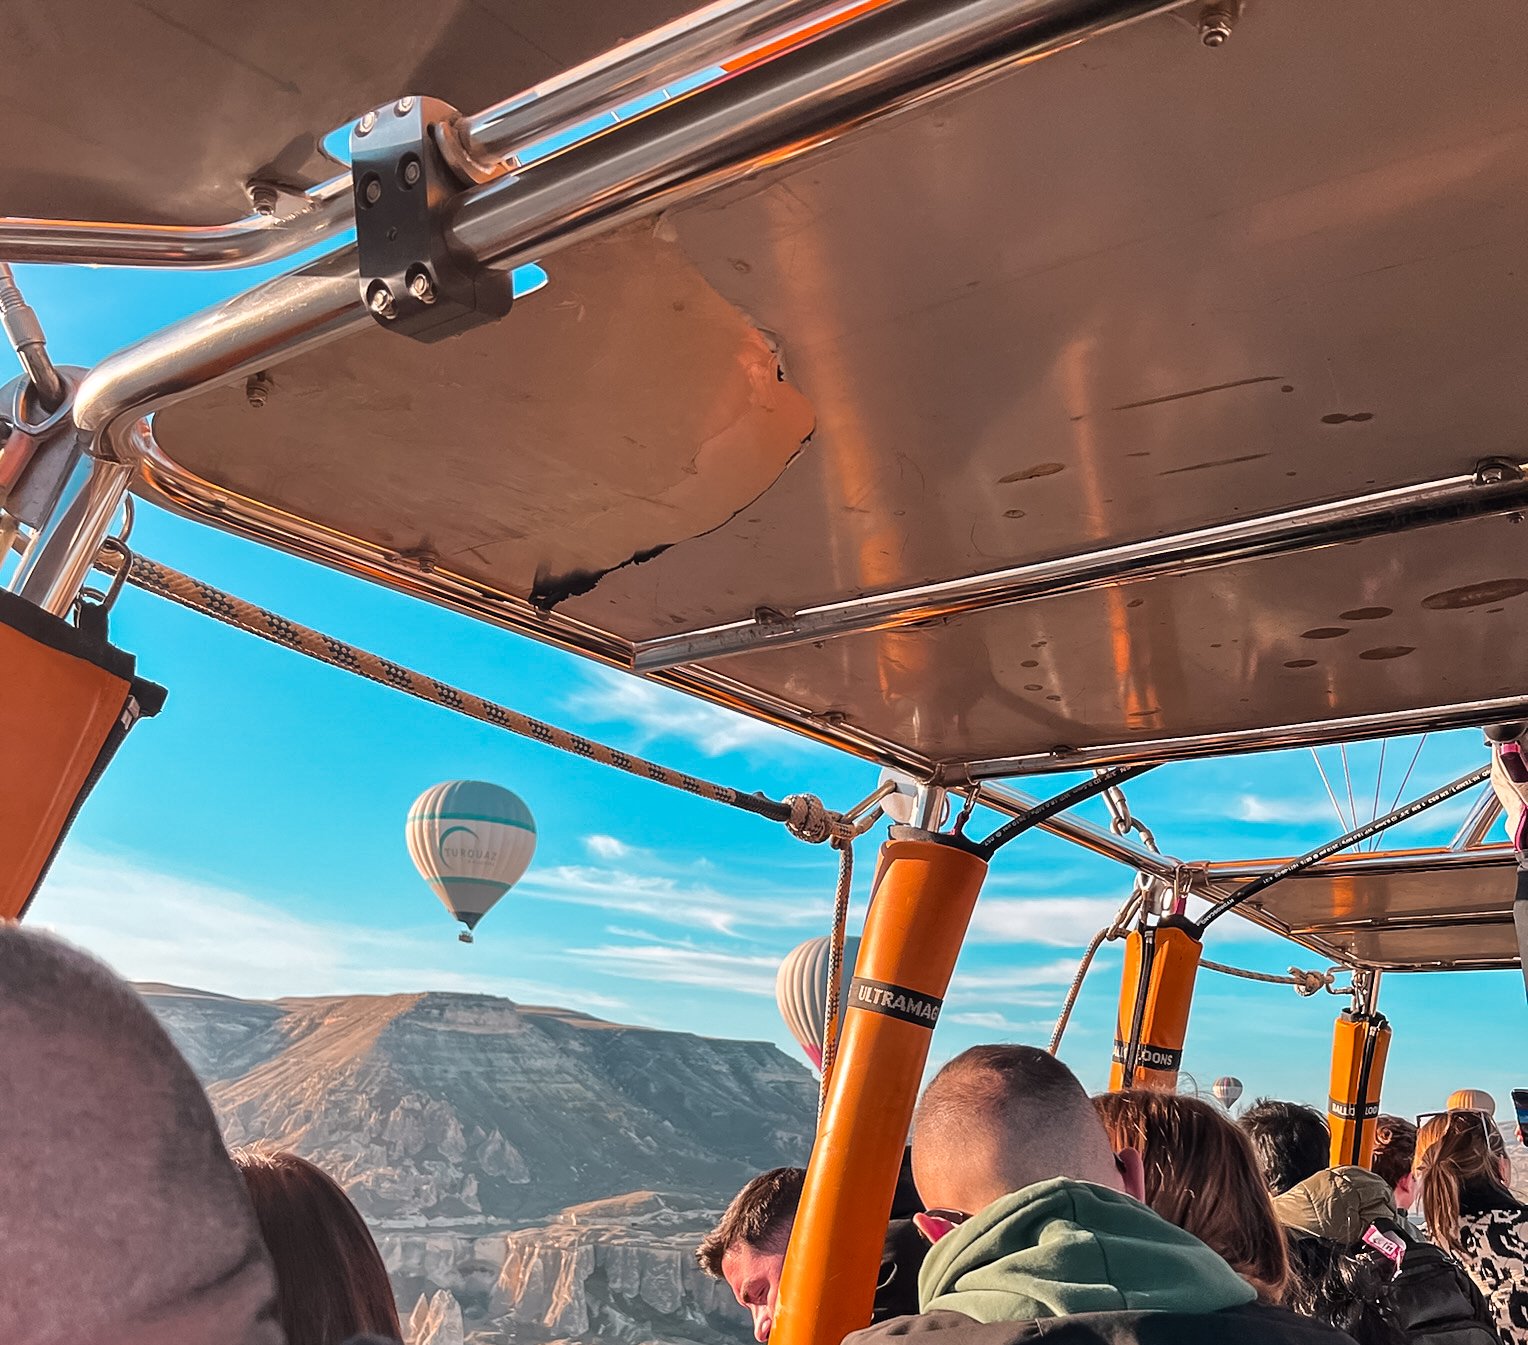 Cappadocia hot air balloon-basket-cappadocaitouristinformaiton